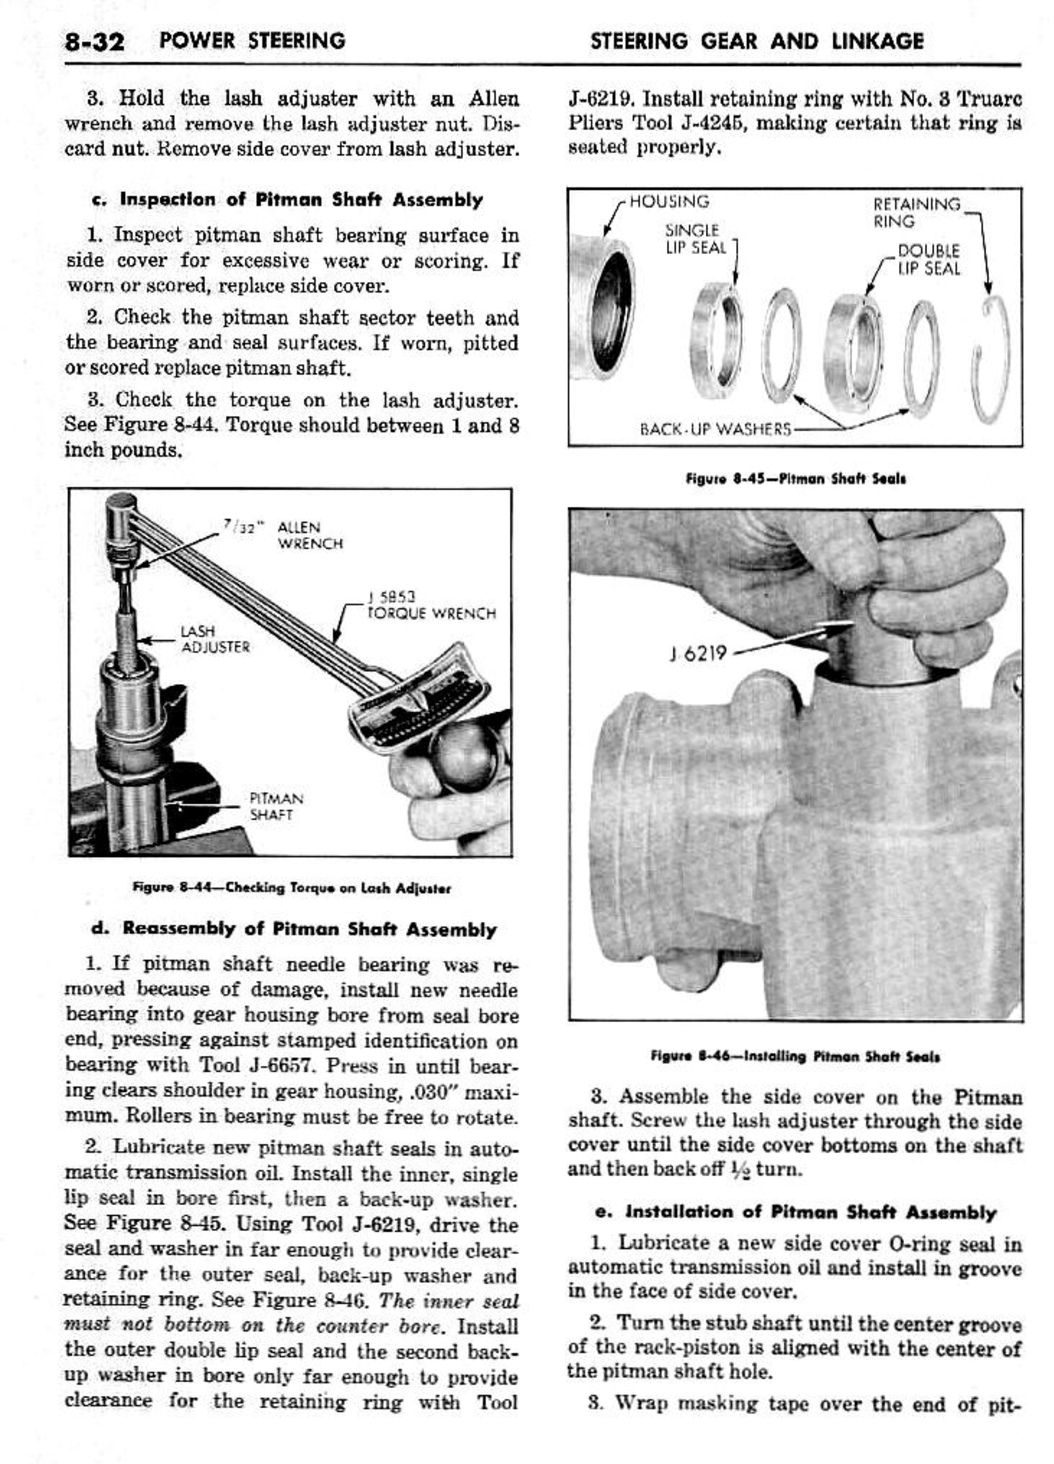 n_09 1959 Buick Shop Manual - Steering-032-032.jpg